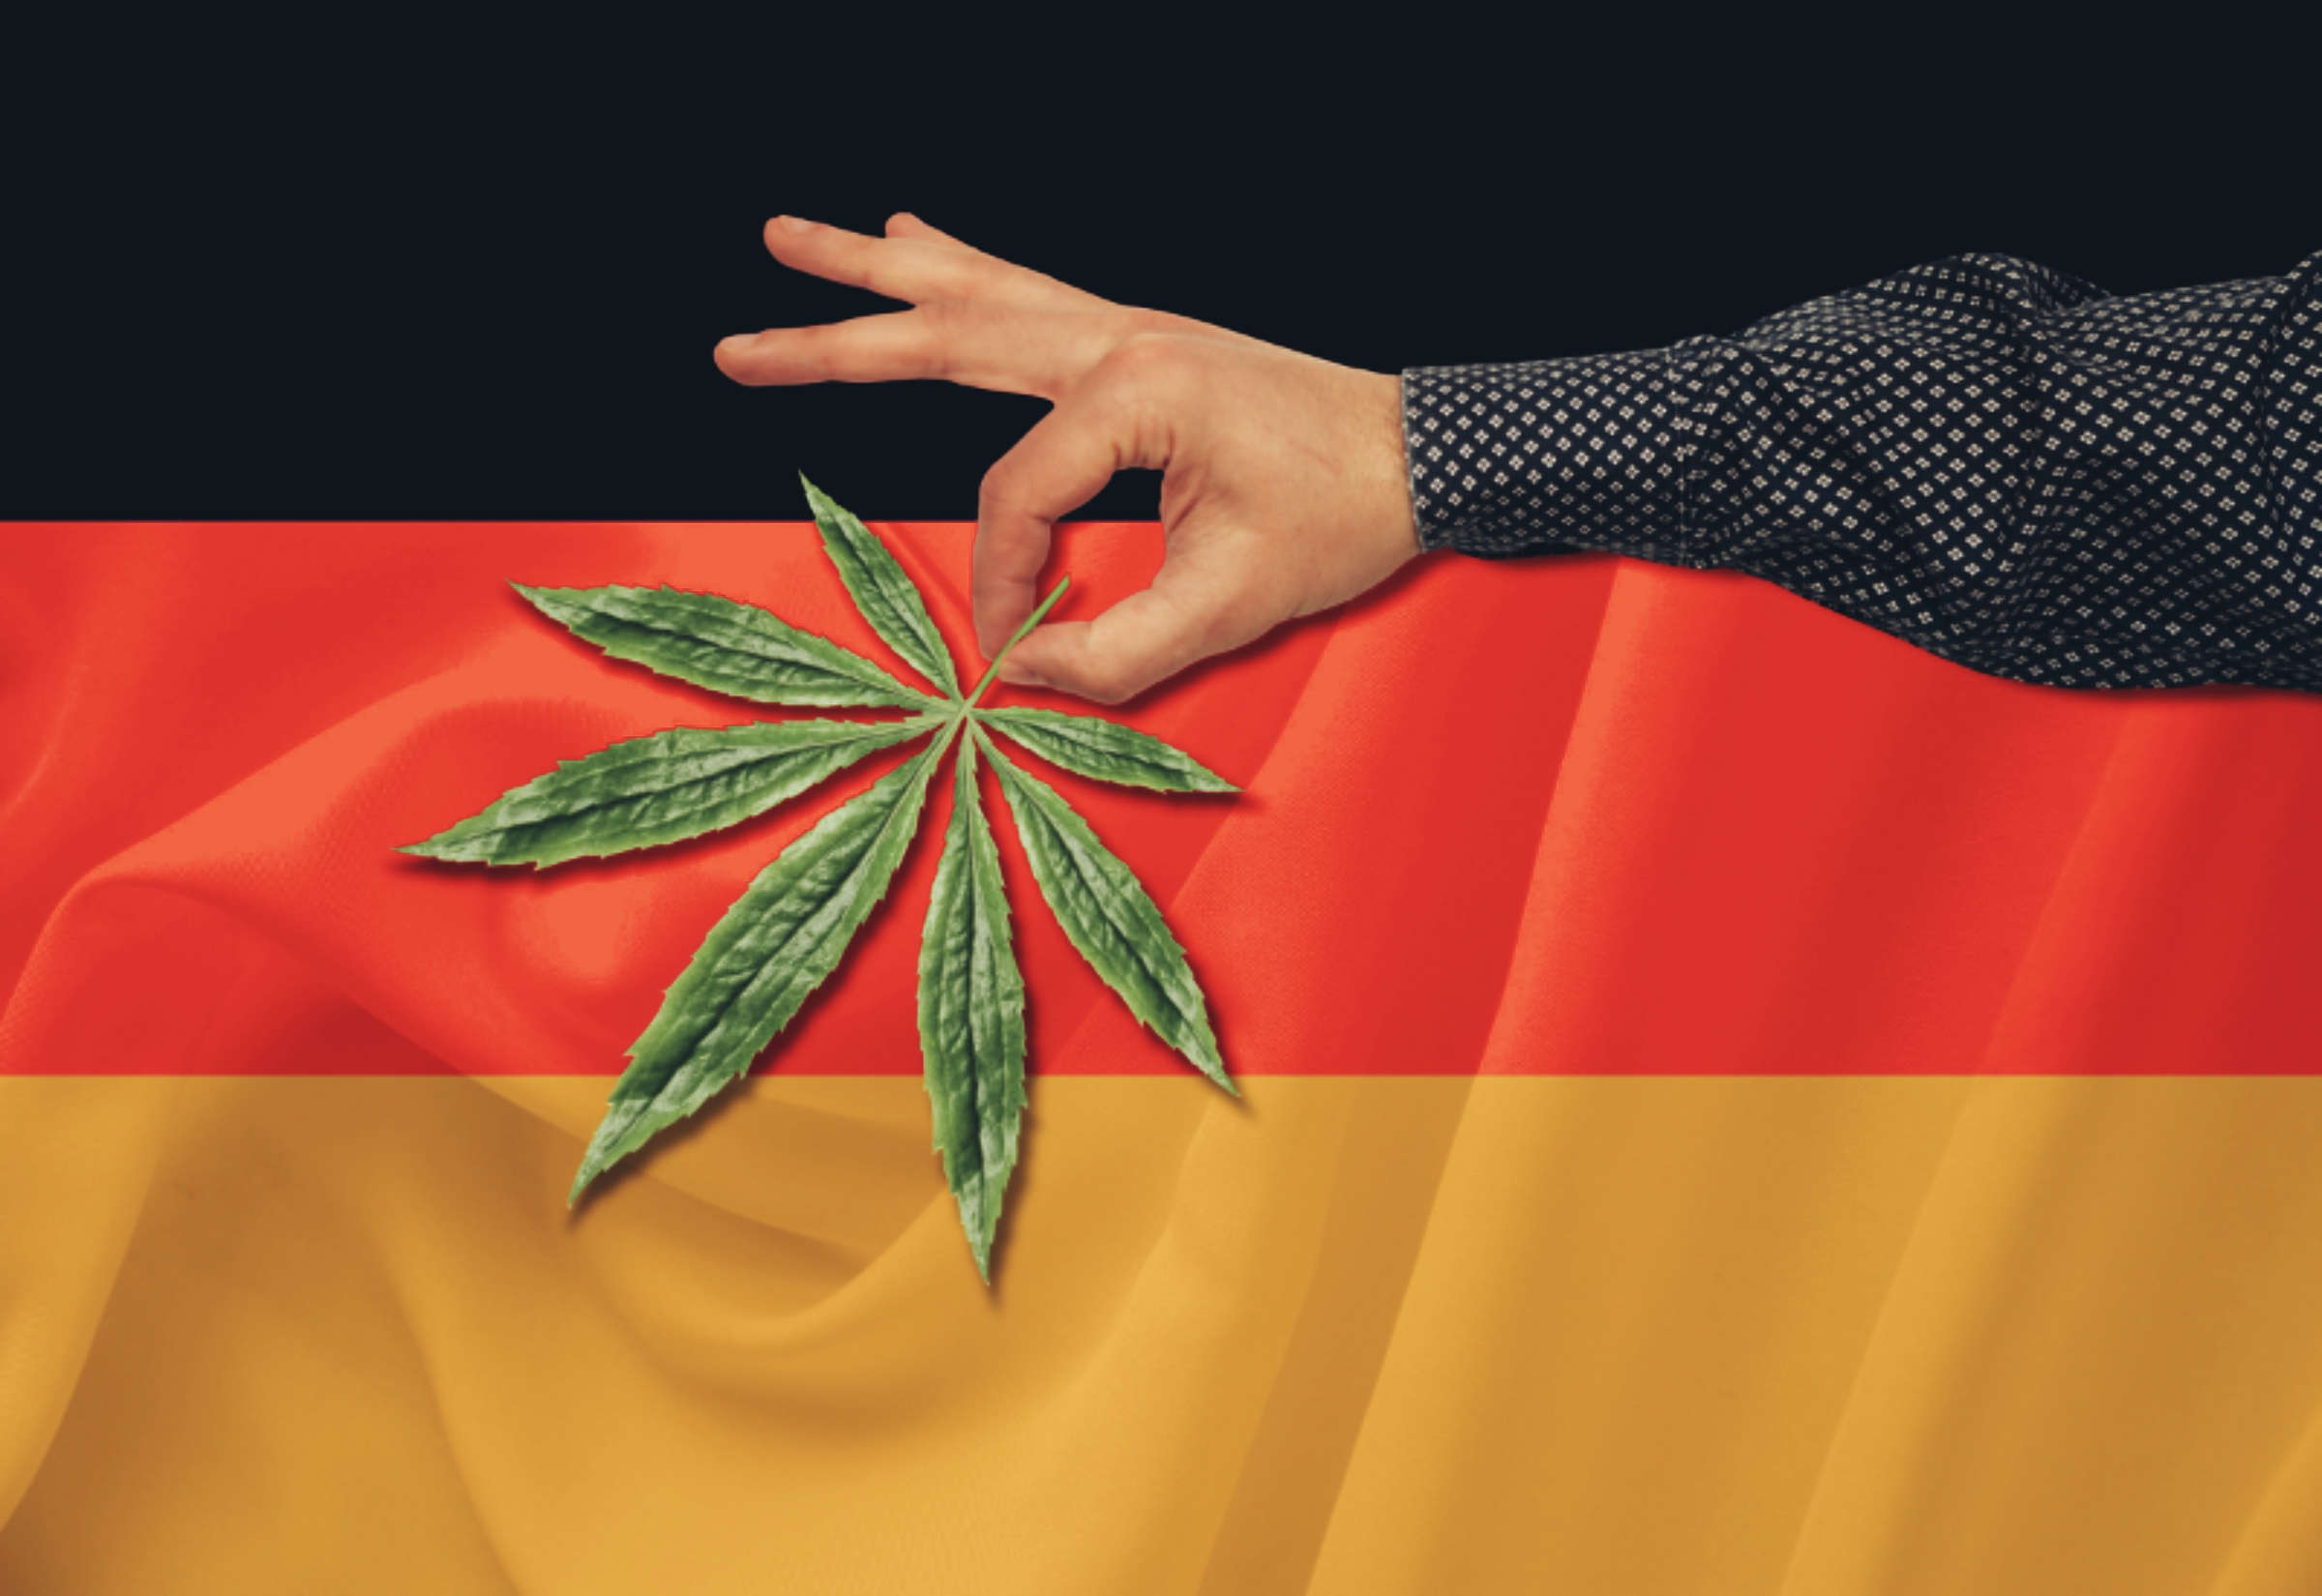 Germany finally moving forward with marijuana legalization